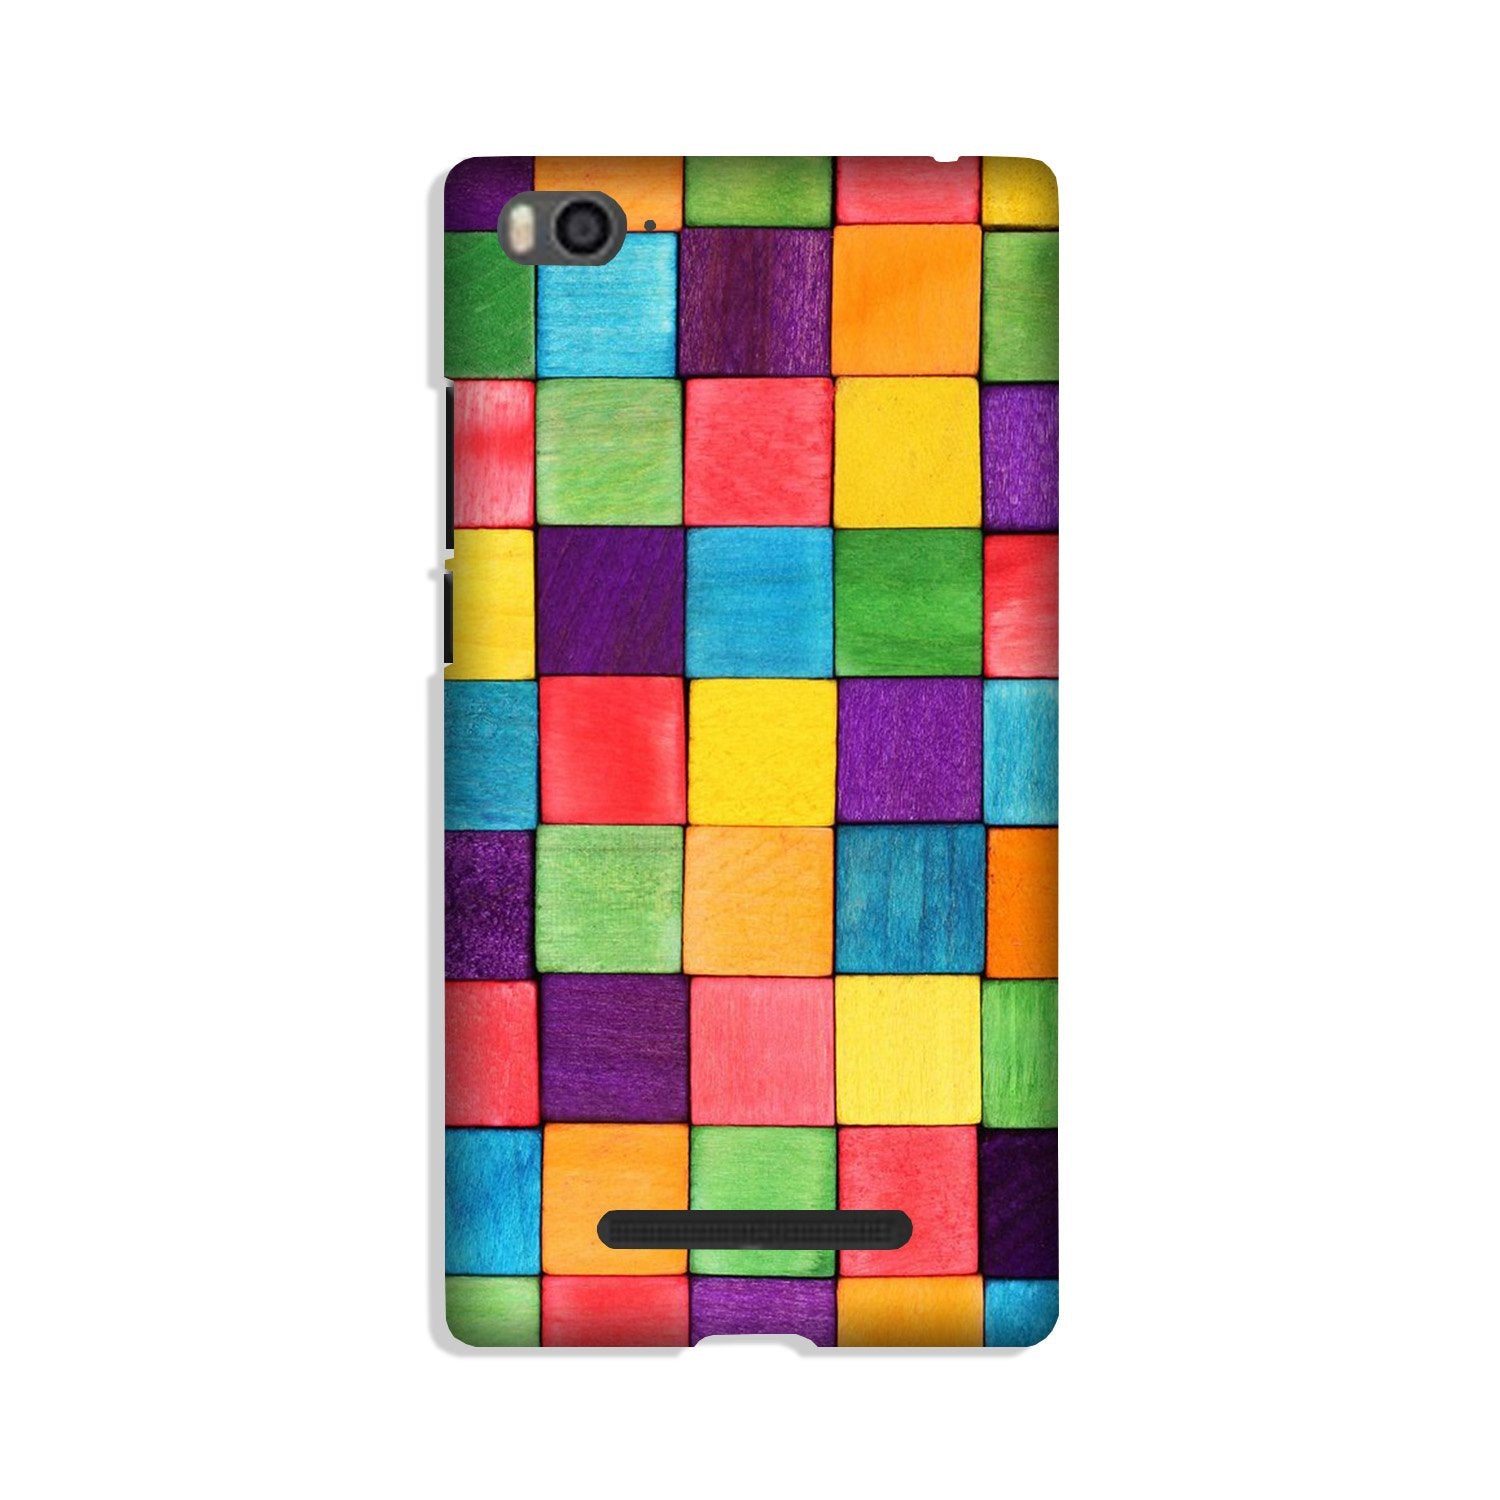 Colorful Square Case for Xiaomi Mi 4i (Design No. 218)